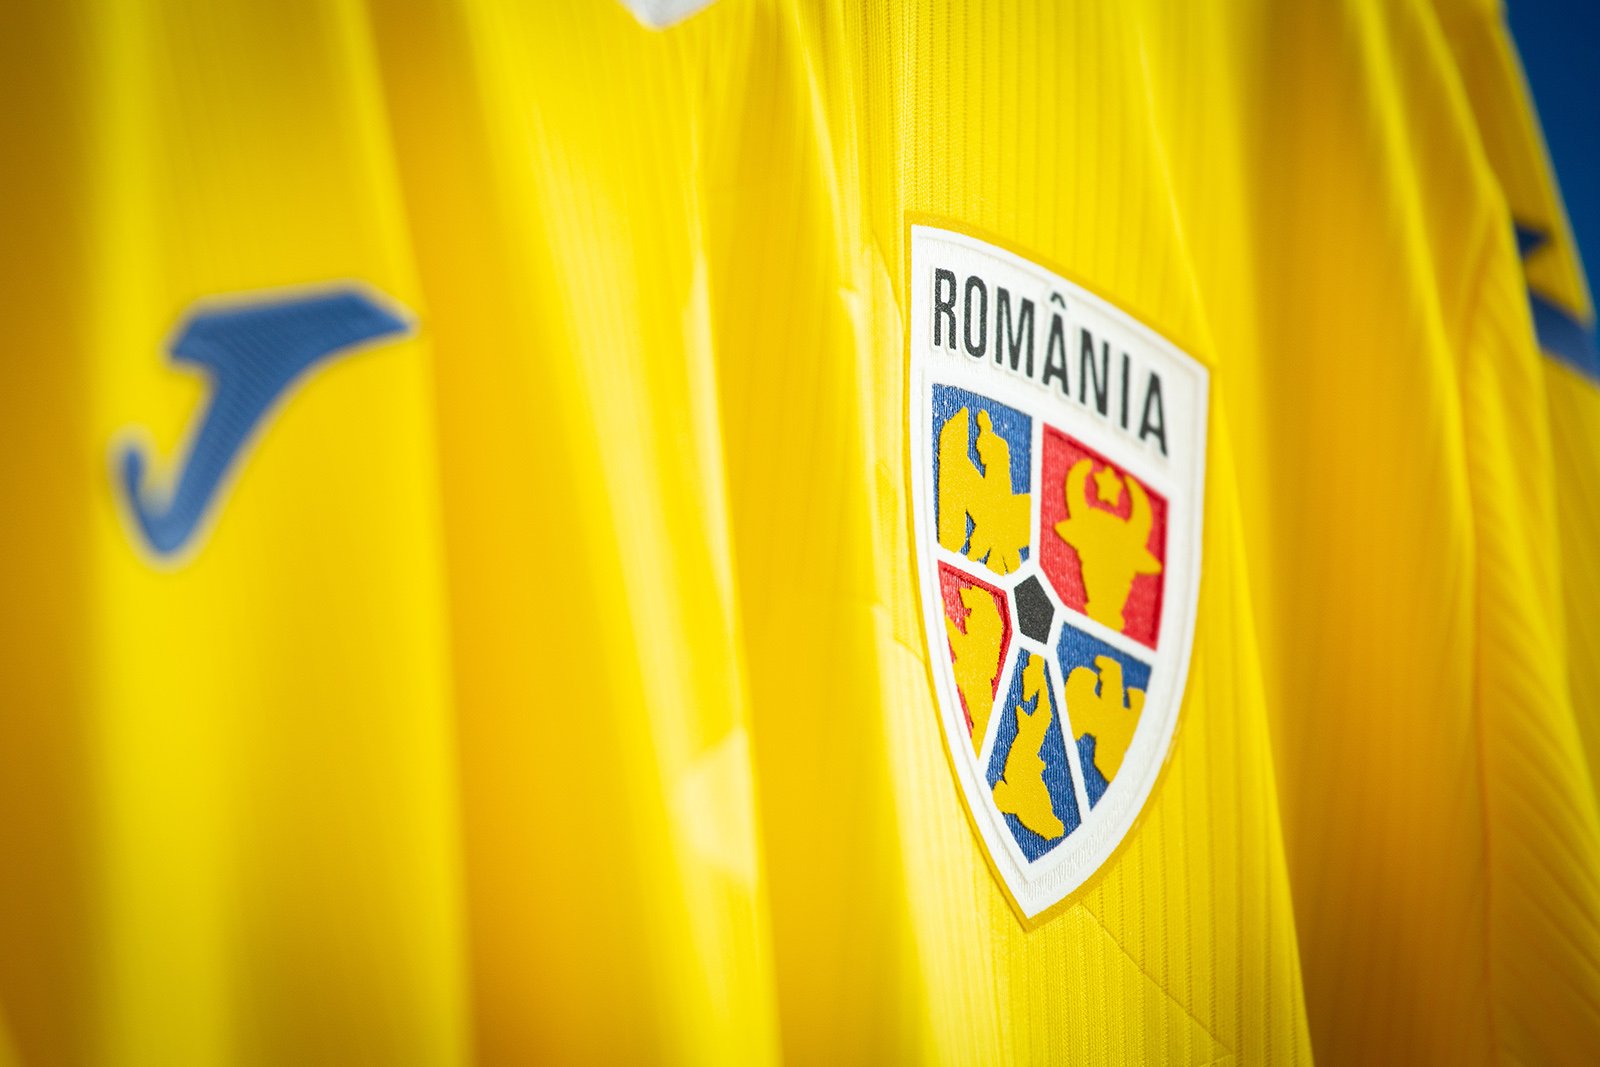  FRF anunţă că România nu va disputa nicio partidă oficială sau amicală cu selecţionate ale Rusiei